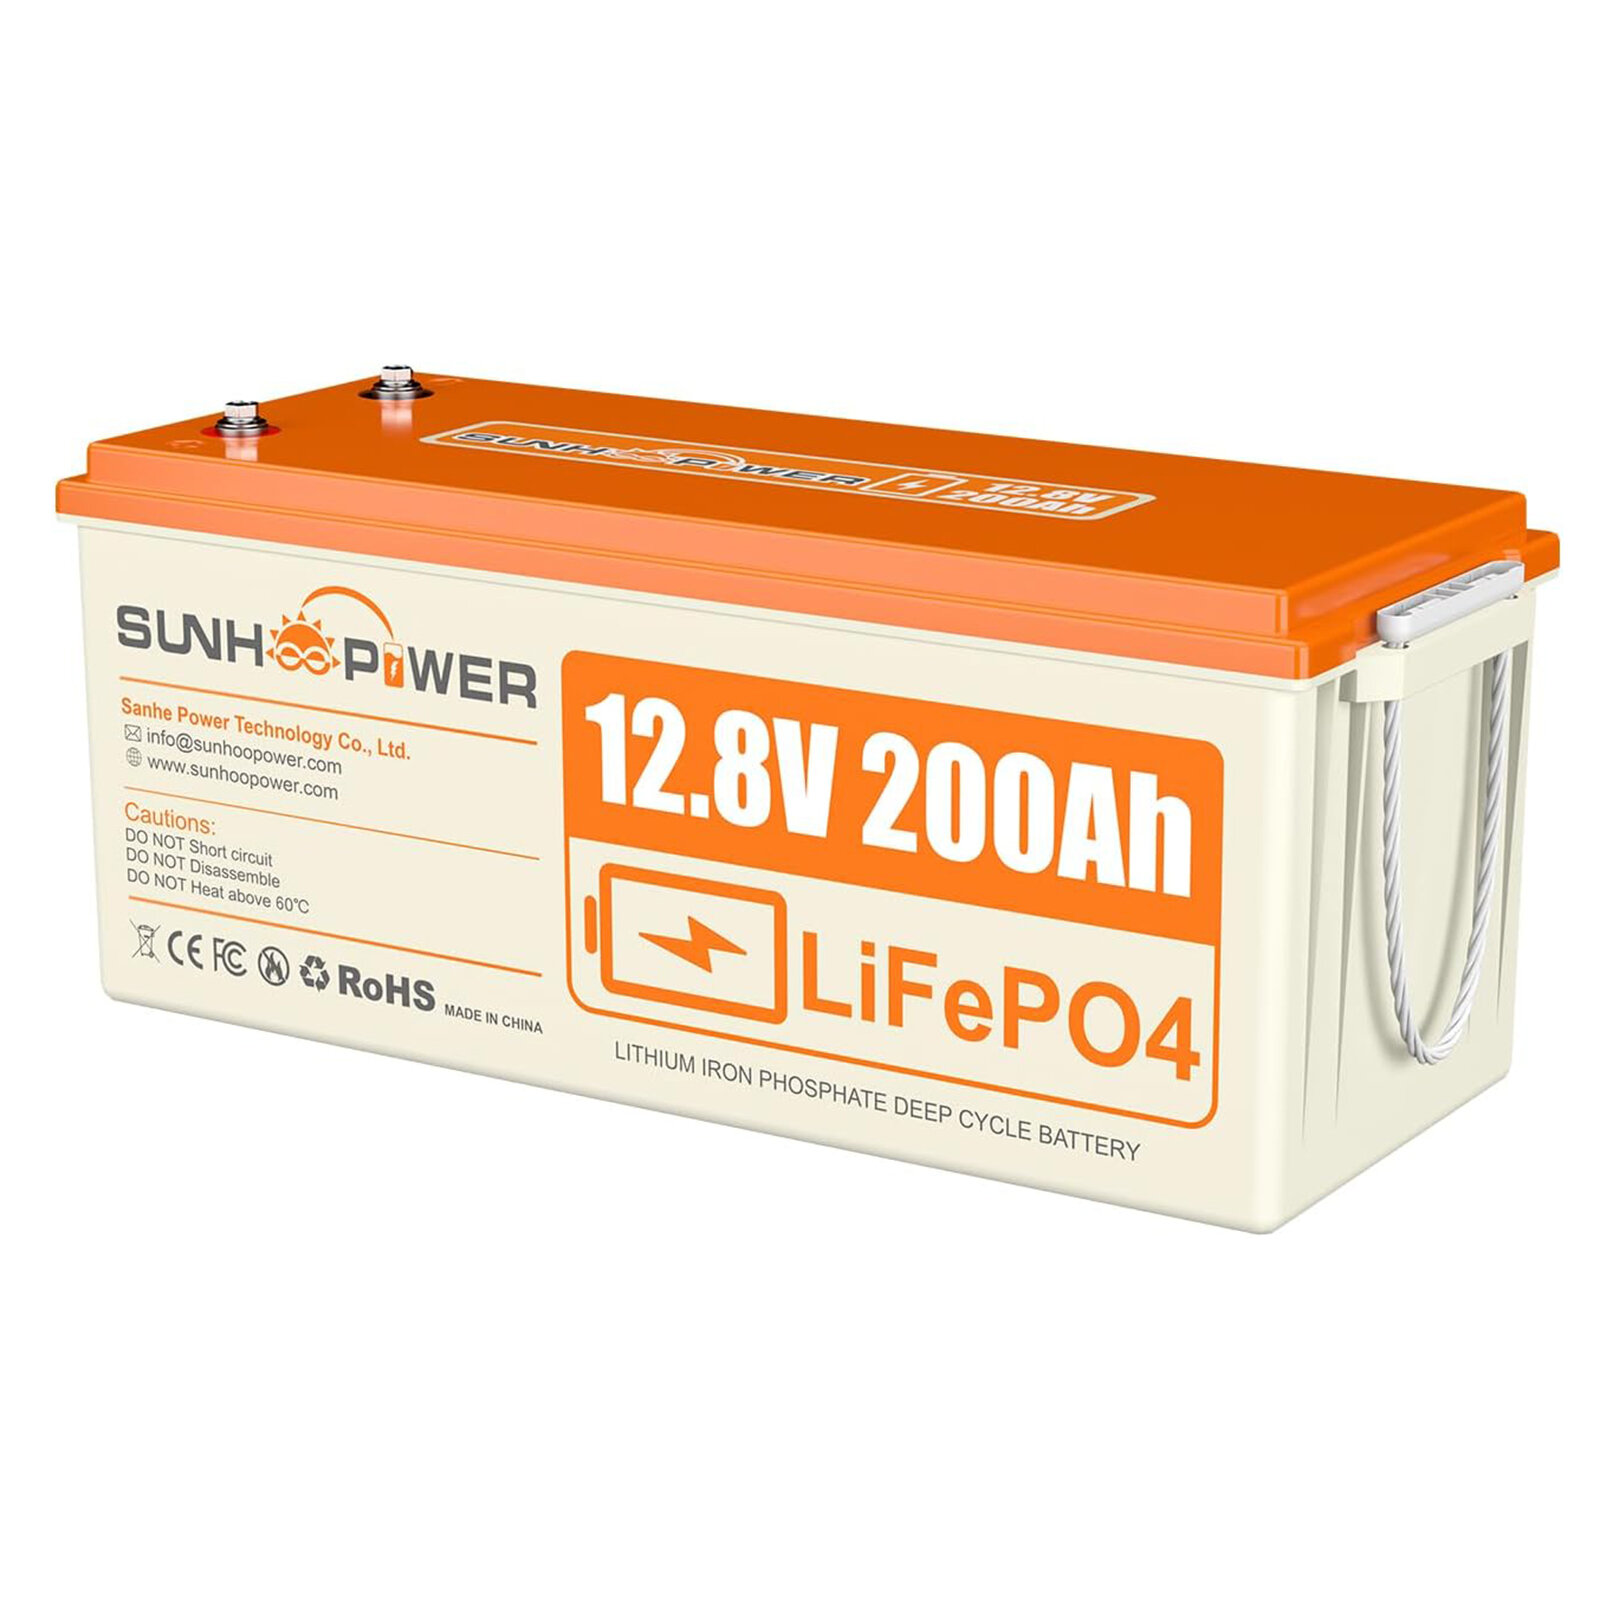 [EU Direct] Batterie LiFePO4 12V 200AH de SUNHOOPOWER, 2560Wh Batterie au lithium rechargeable avec 100A BMS intégré, autodécharge, parfaite pour les camping-cars, les bateaux, le stockage d'énergie, l'alimentation de secours hors-réseau